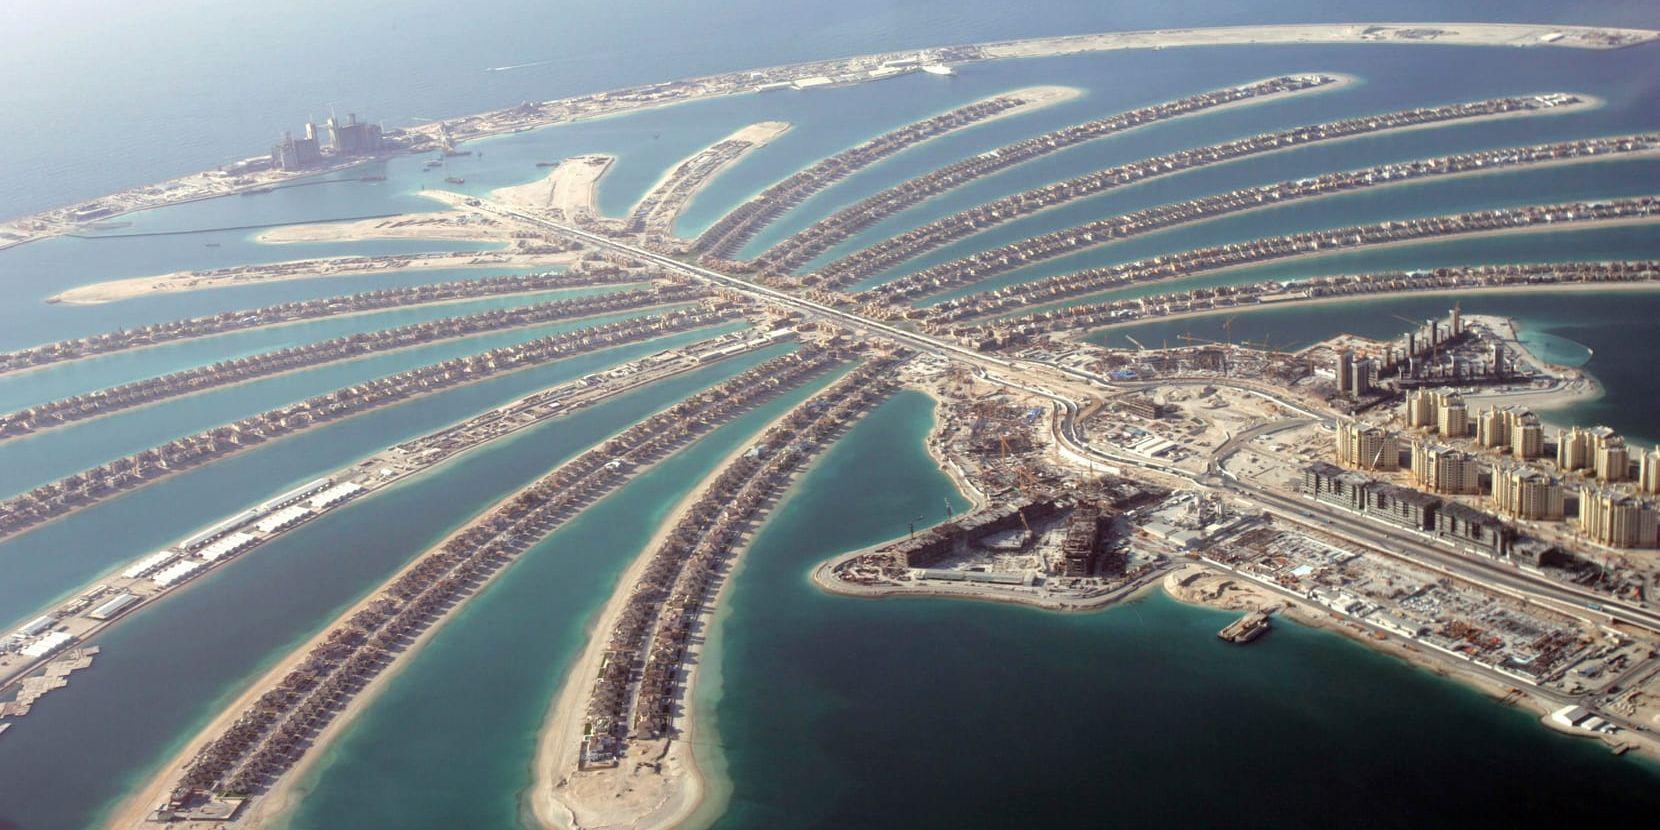 Pengar svindlade från Danmark tros ha hamnat här, på en konstgjord ö i Dubai, där den aktiemäklare bor som pekas ut som huvudman i svindeln mot landet. Arkivbild.